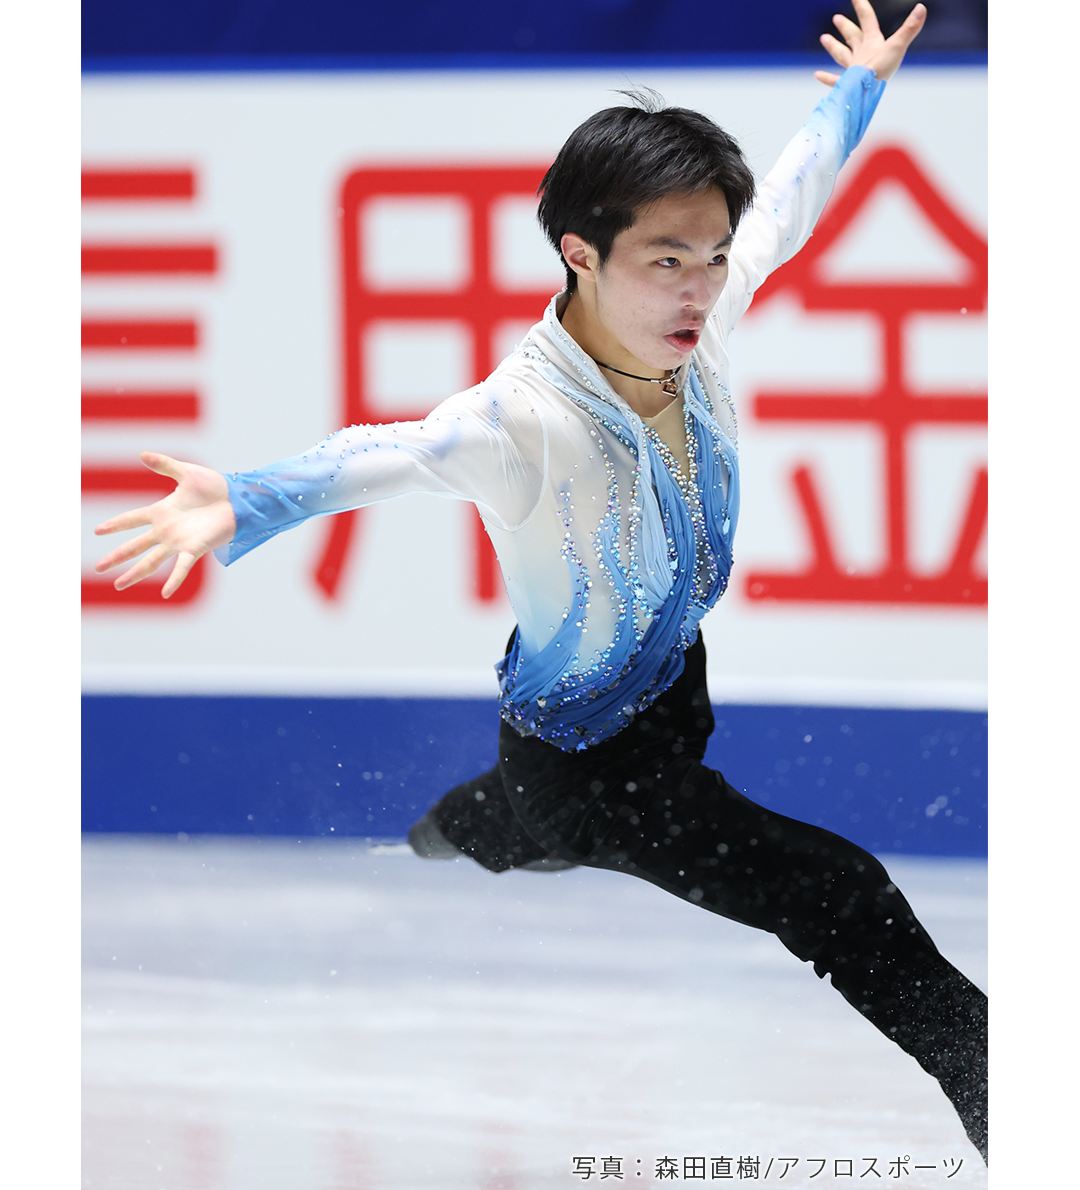 フィギュアスケート2021年NHK杯での三浦佳生選手